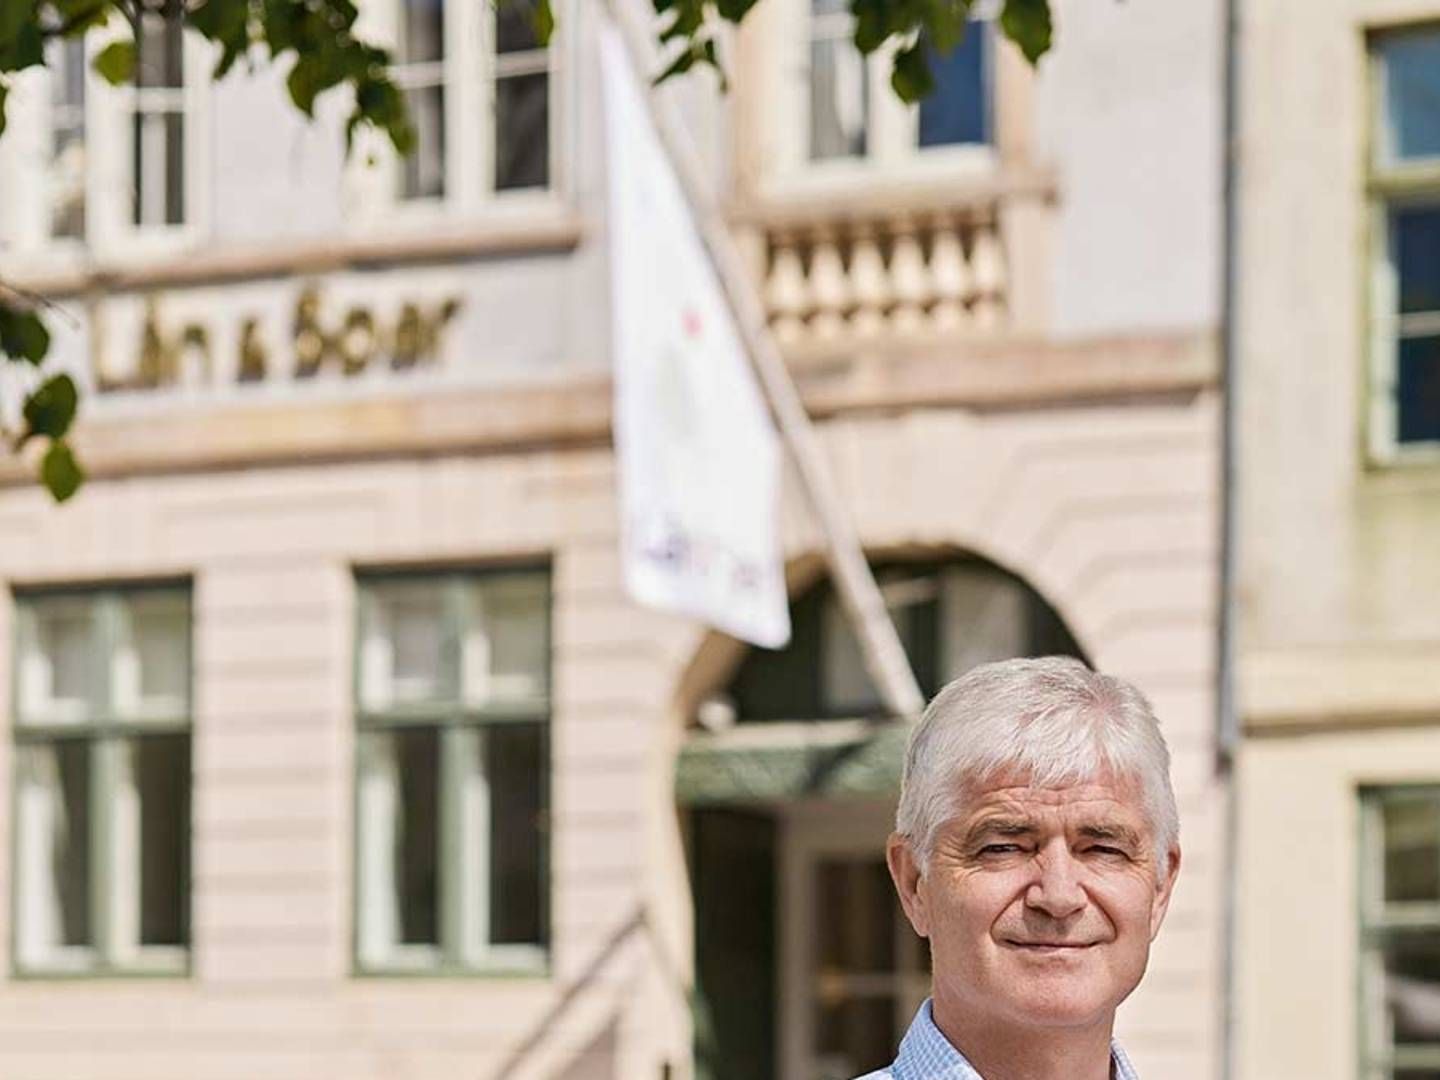 Lån & Spar-topchef John Christiansen kan glæde sig over, at bankens basisresultat er steget med knap 50 pct. i første kvartal. | Foto: Lån & Spar / PR